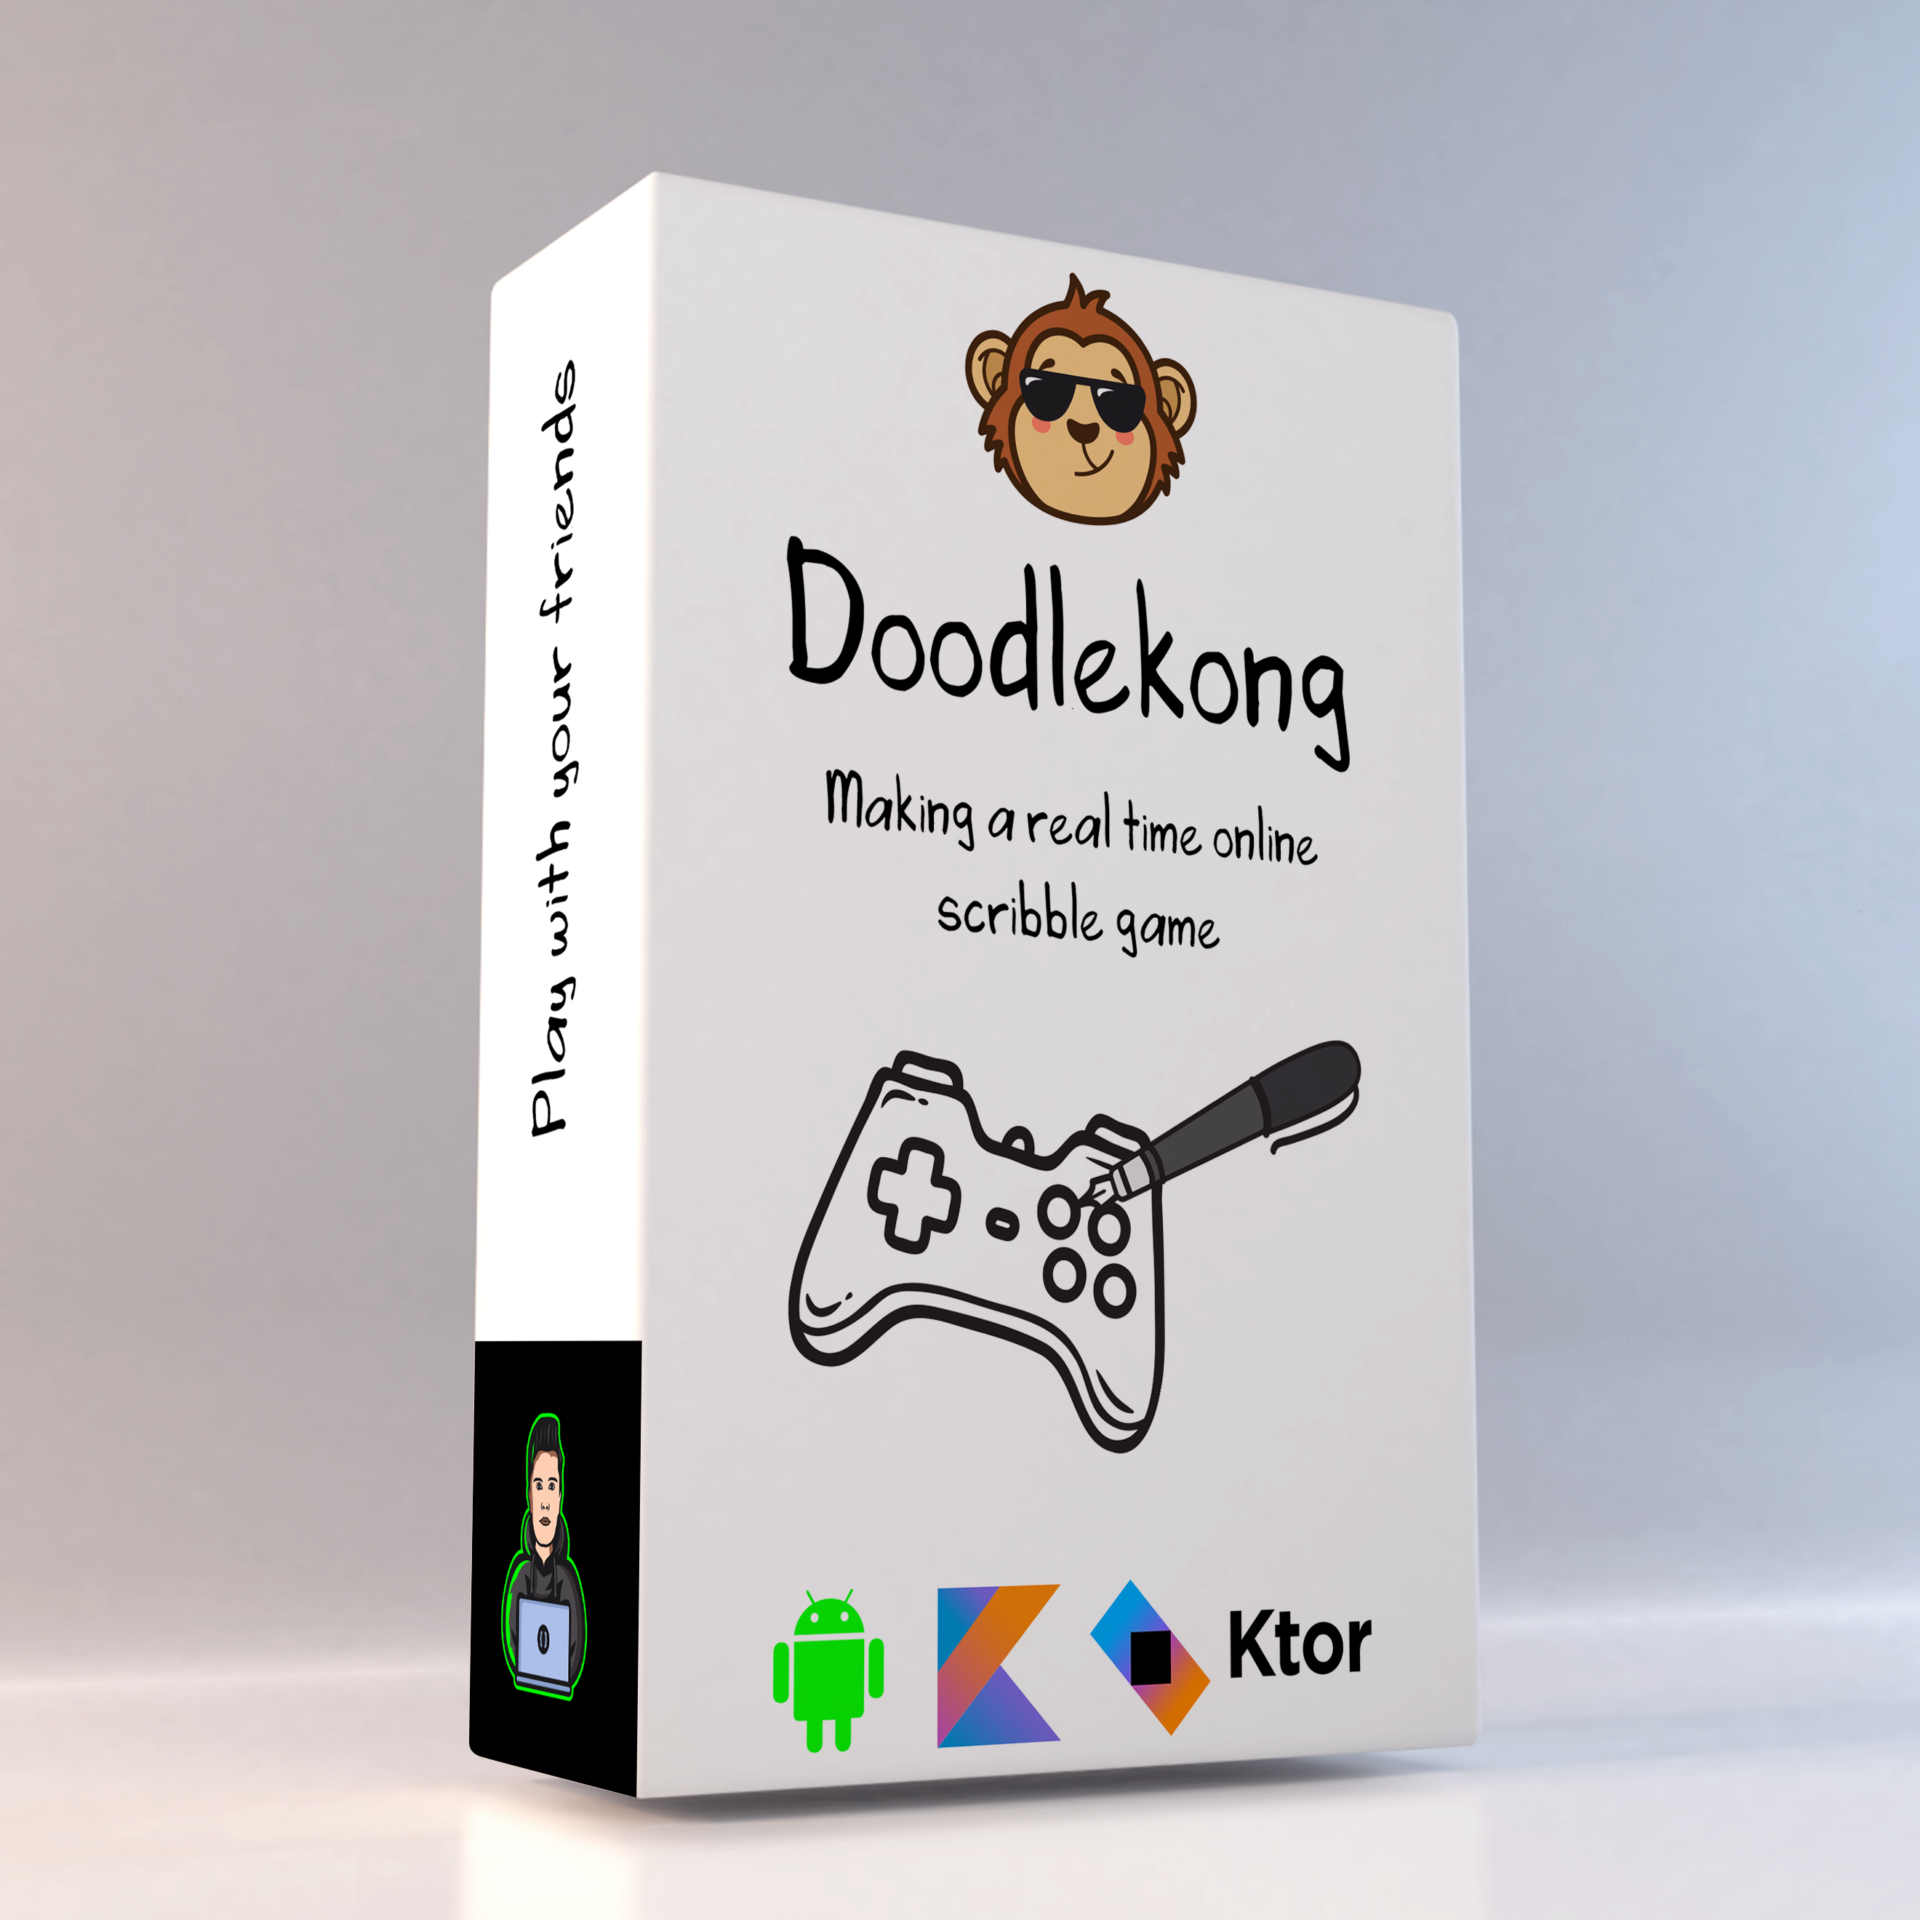 Doodlekong